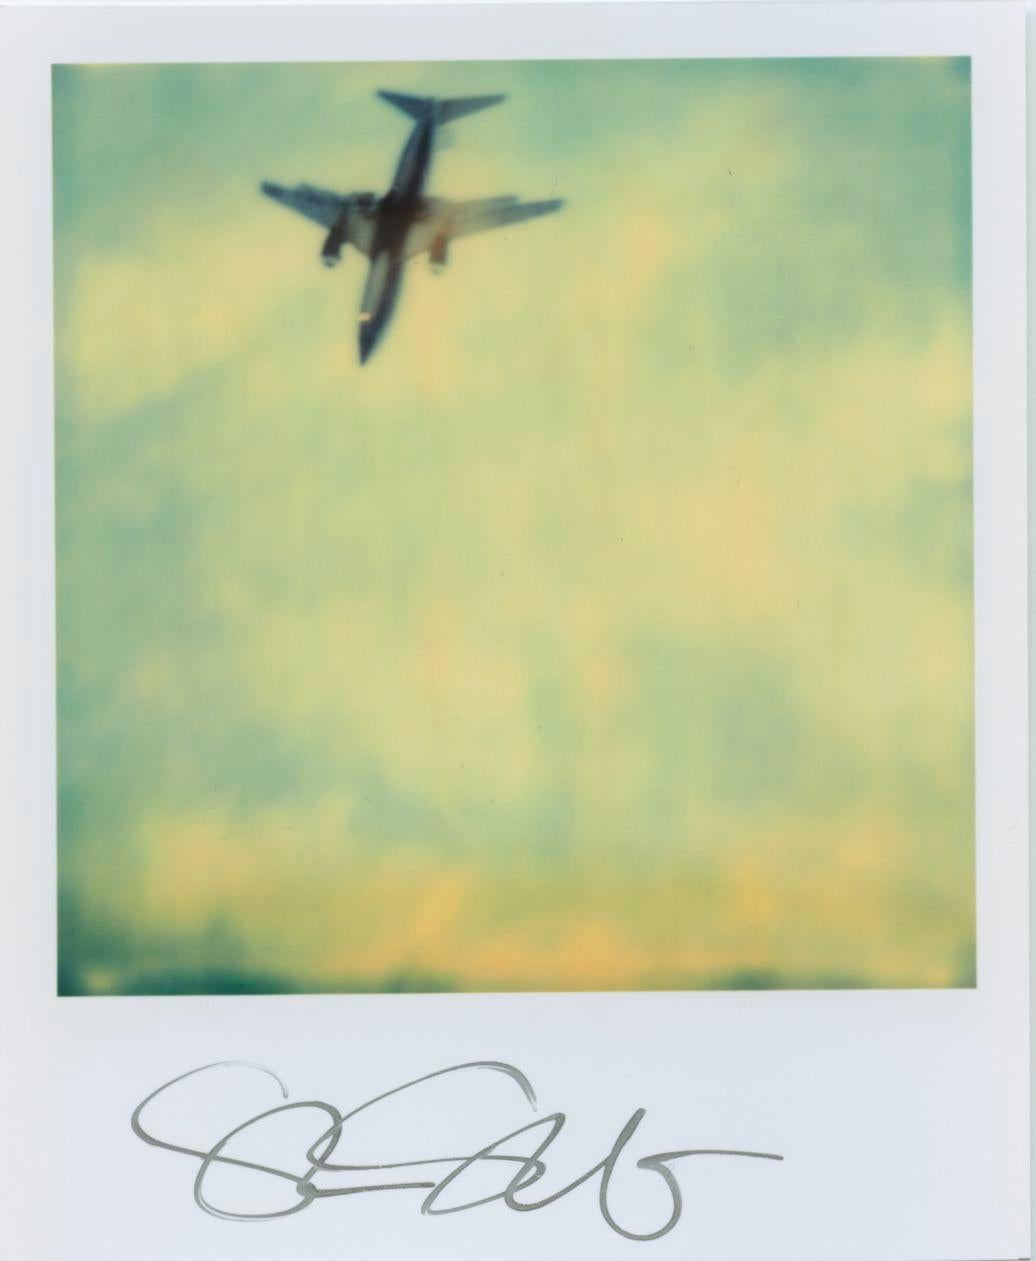 Stefanie Schneider Polaroidformat unbegrenzt Mini 'Flugzeuge' - 2001 - 

vorne signiert, nicht montiert. 
1 digitales Farbfoto auf der Grundlage eines Polaroids. 

Offene Editionen in Polaroidgröße 1999-2016
10.7 x 8,8cm (Bild 7,9x7,7cm). 

Stefanie